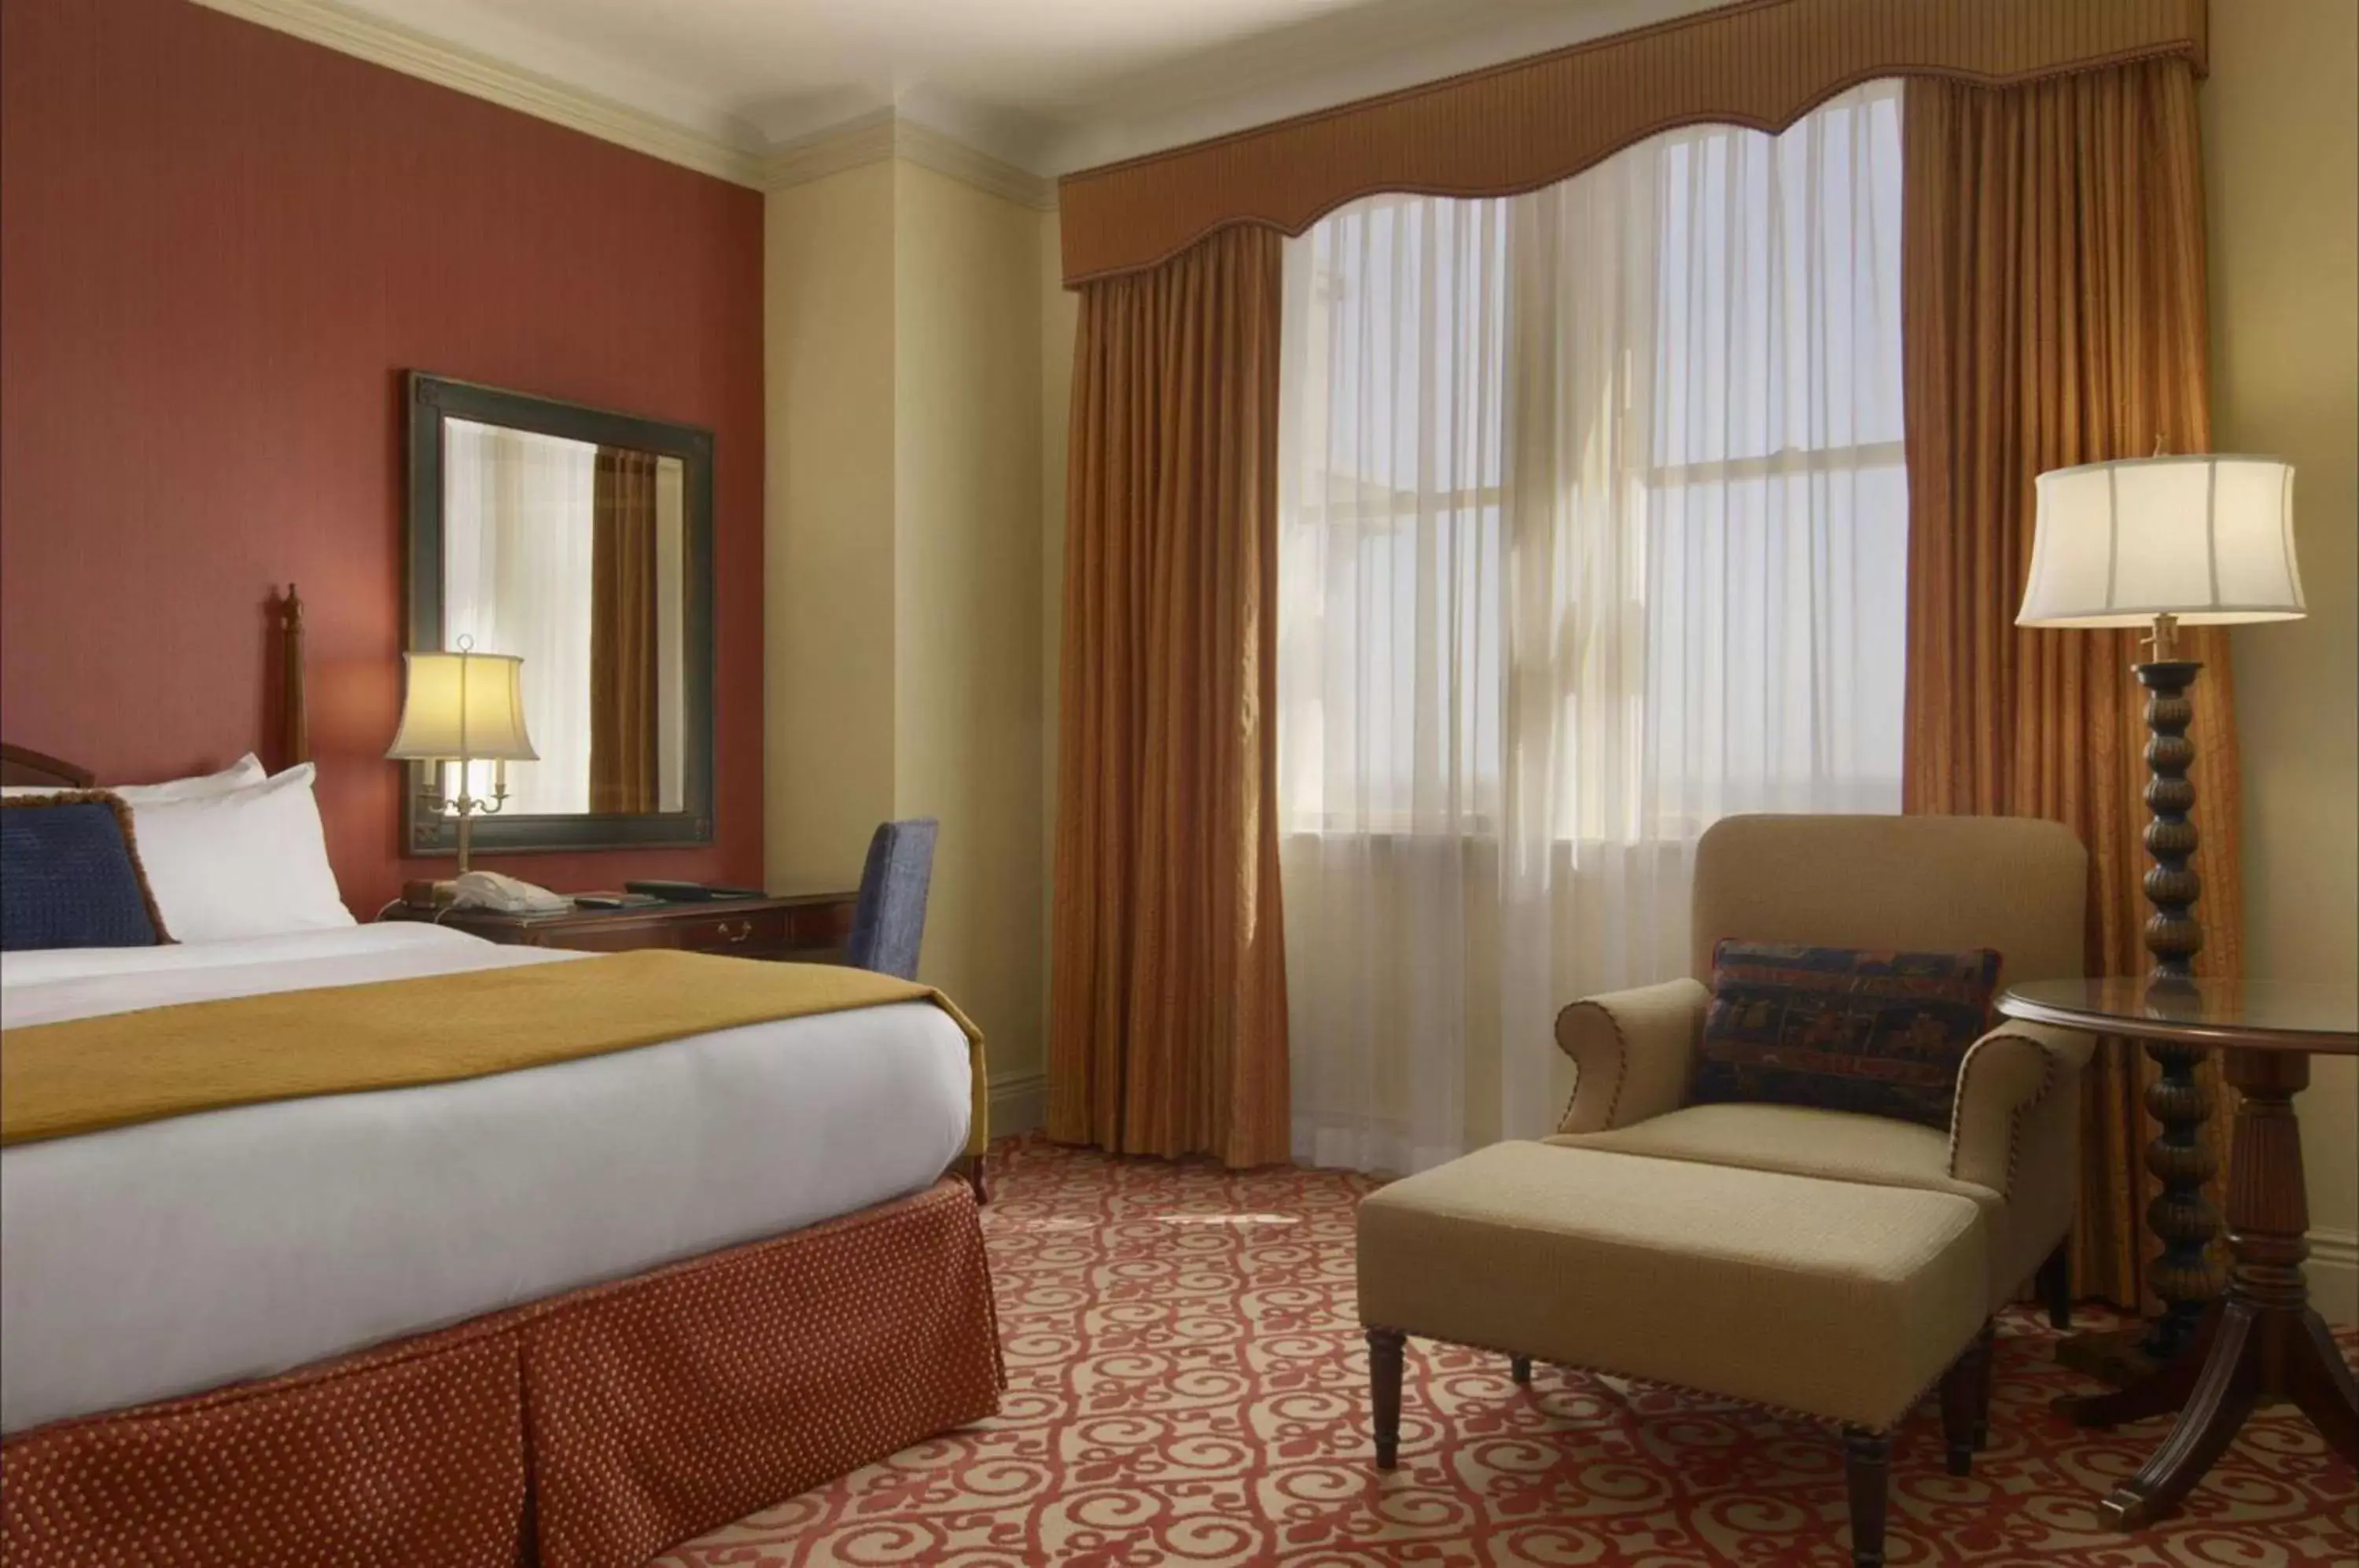 Bedroom in Fairmont Hotel Macdonald